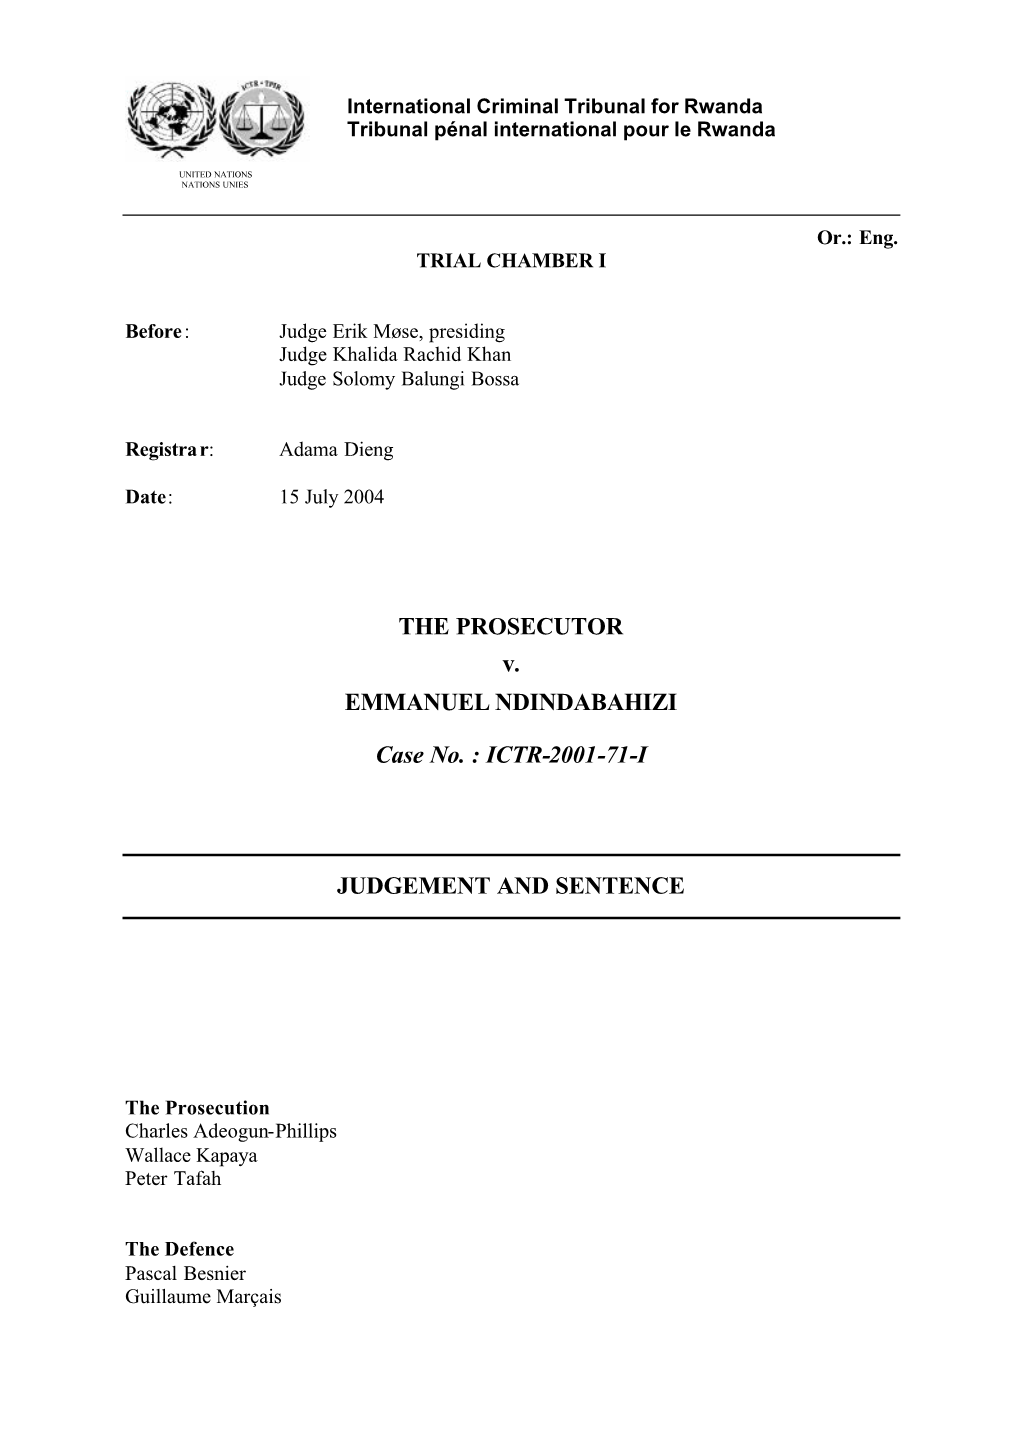 Prosecutor V. Ndindabahizi, Case No. ICTR-2001-71-I, Judgment And